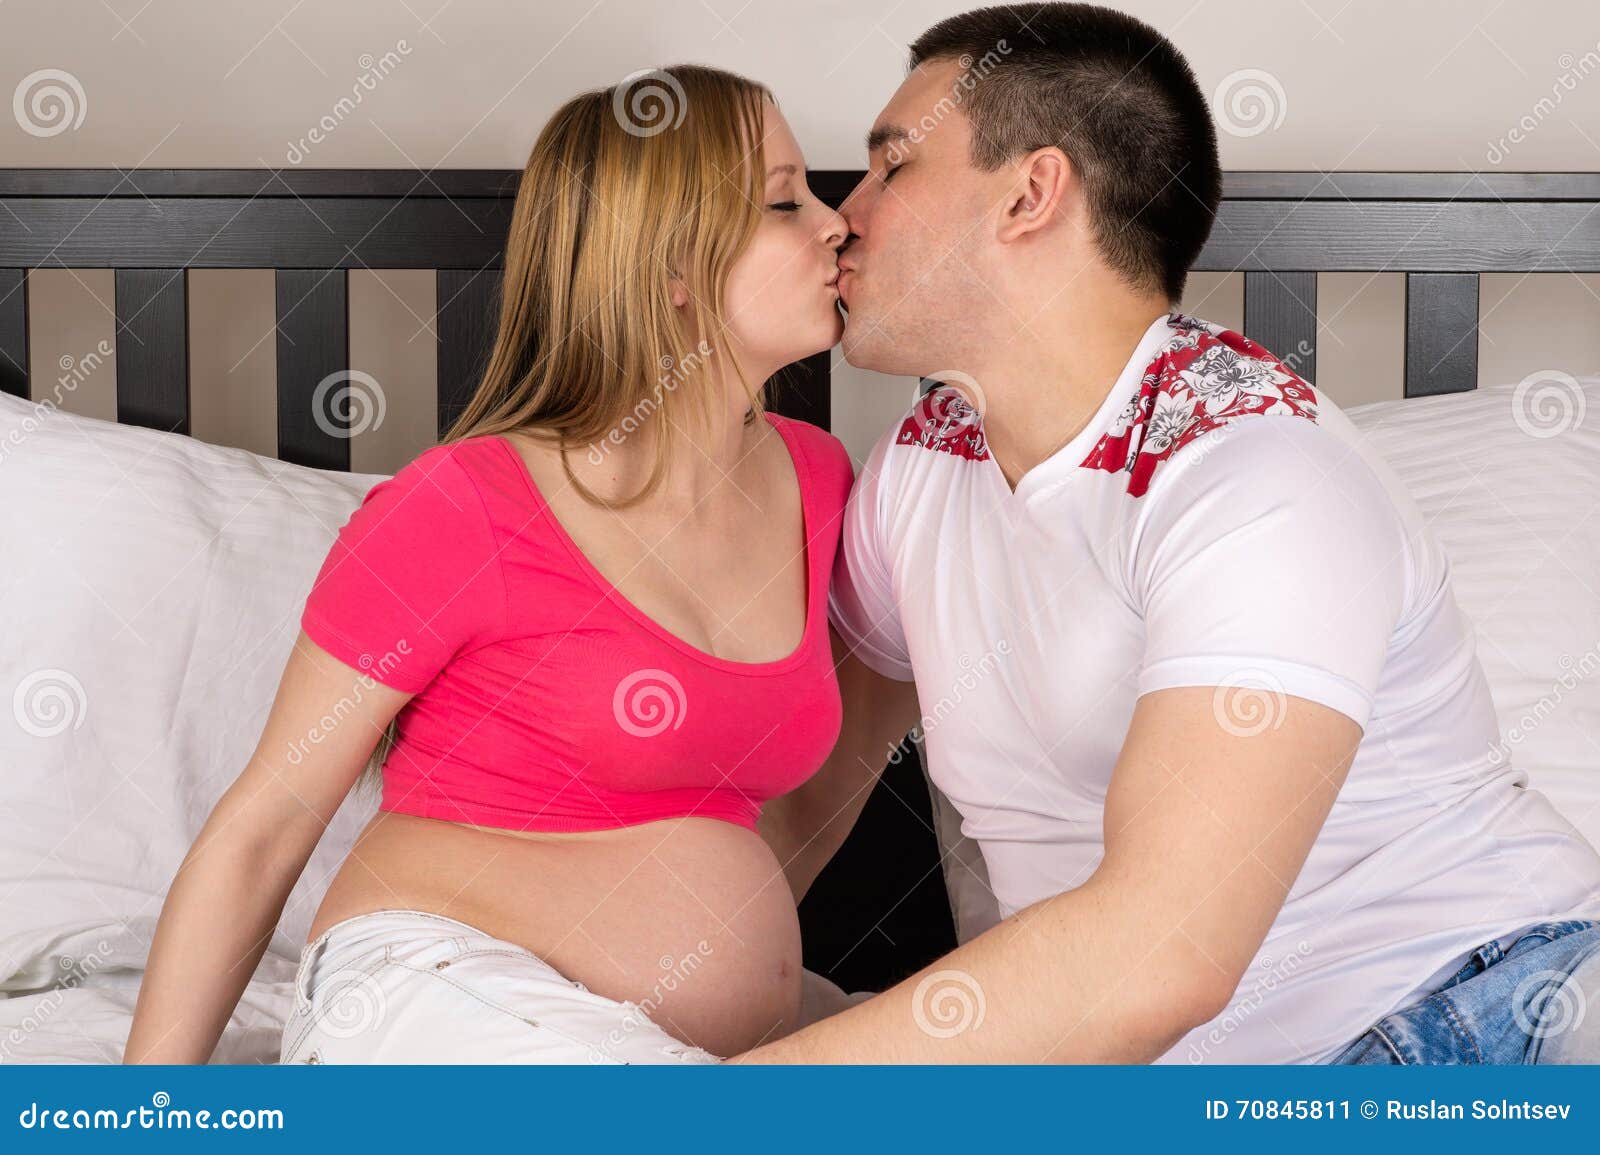 Дяденьки делают тетенька. Поцелуй беременной. Поцелуй в живот беременной. Целовашки с беременной.